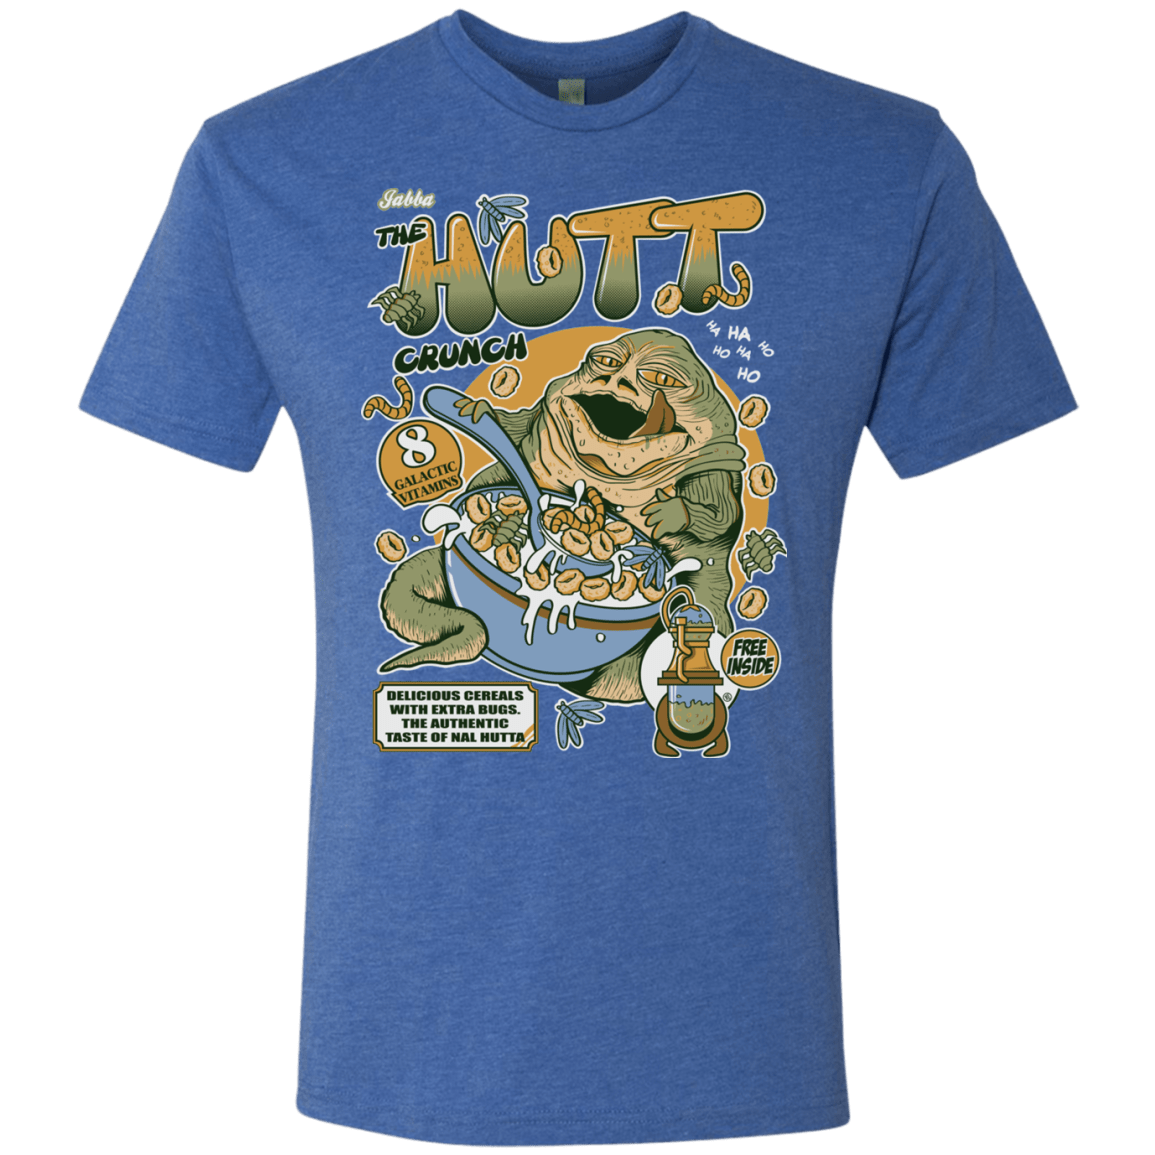 T-Shirts Vintage Royal / S The Hutt Crunch Men's Triblend T-Shirt